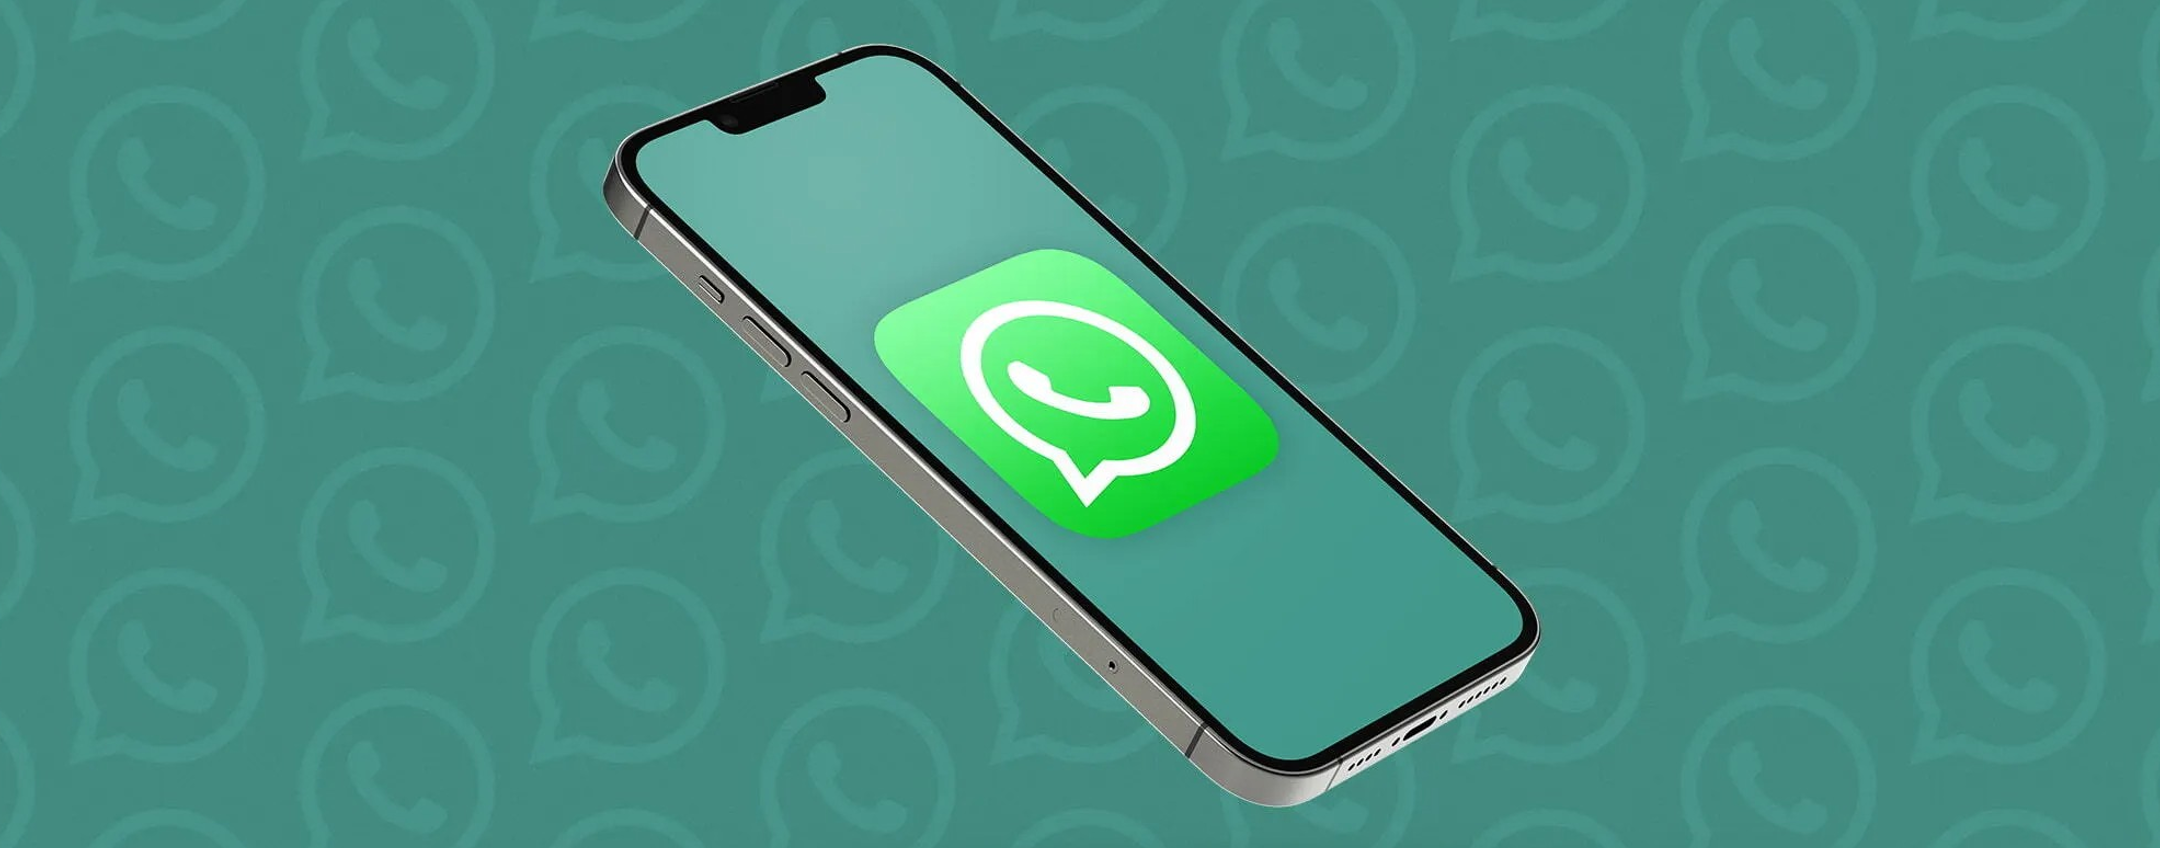 WhatsApp: i sondaggi non saranno una funzione esclusiva dei gruppi